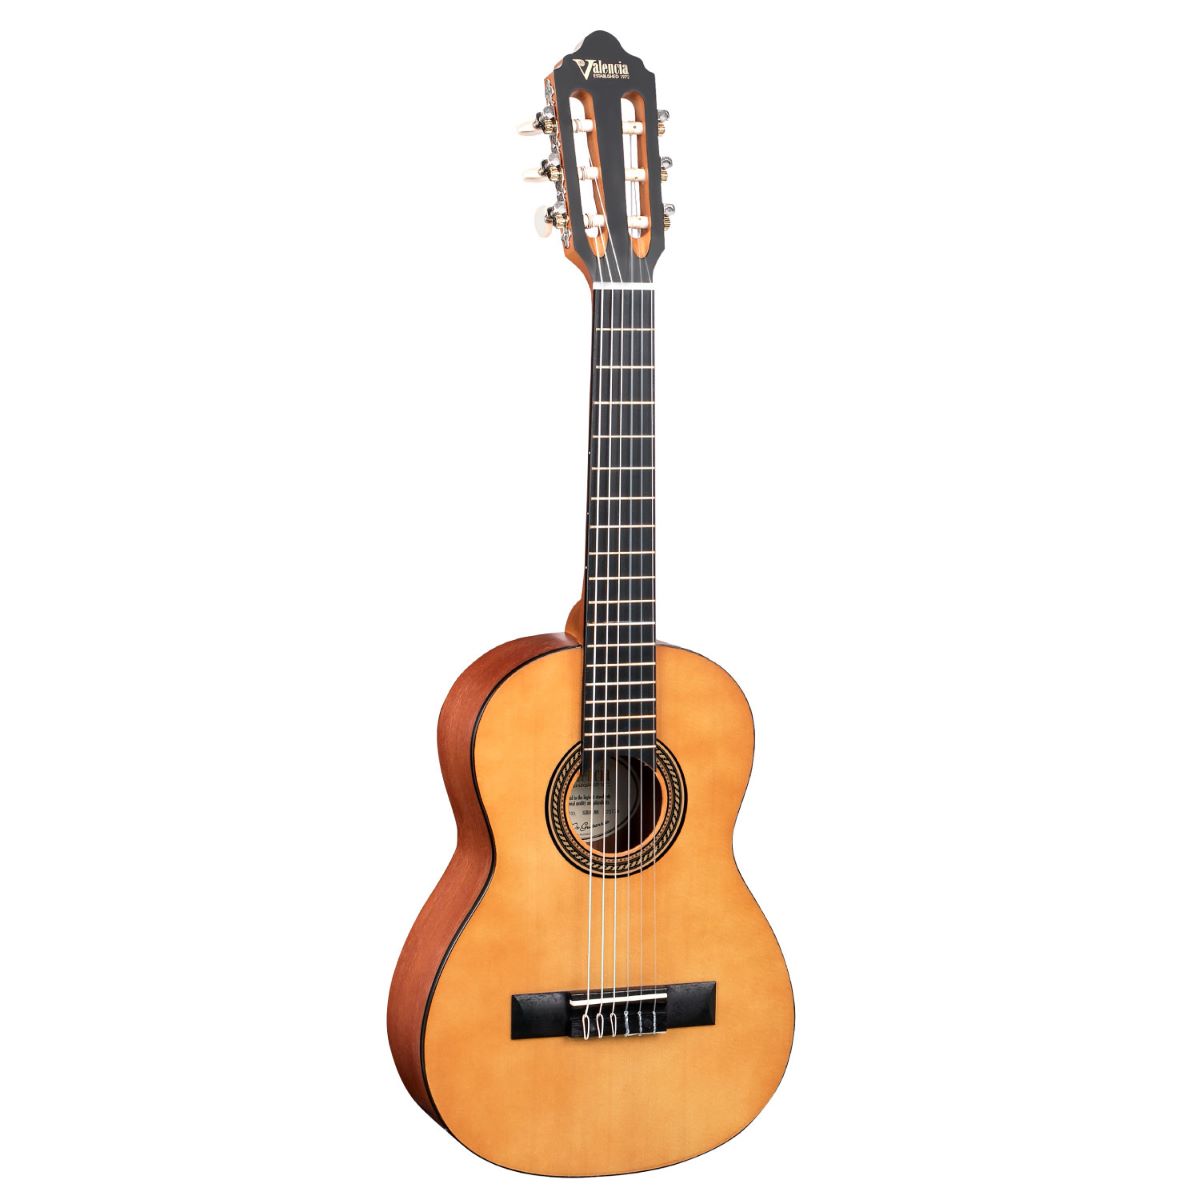 Valencia VC201 1/4 クラシックギター 1/4サイズ 480mmスケール